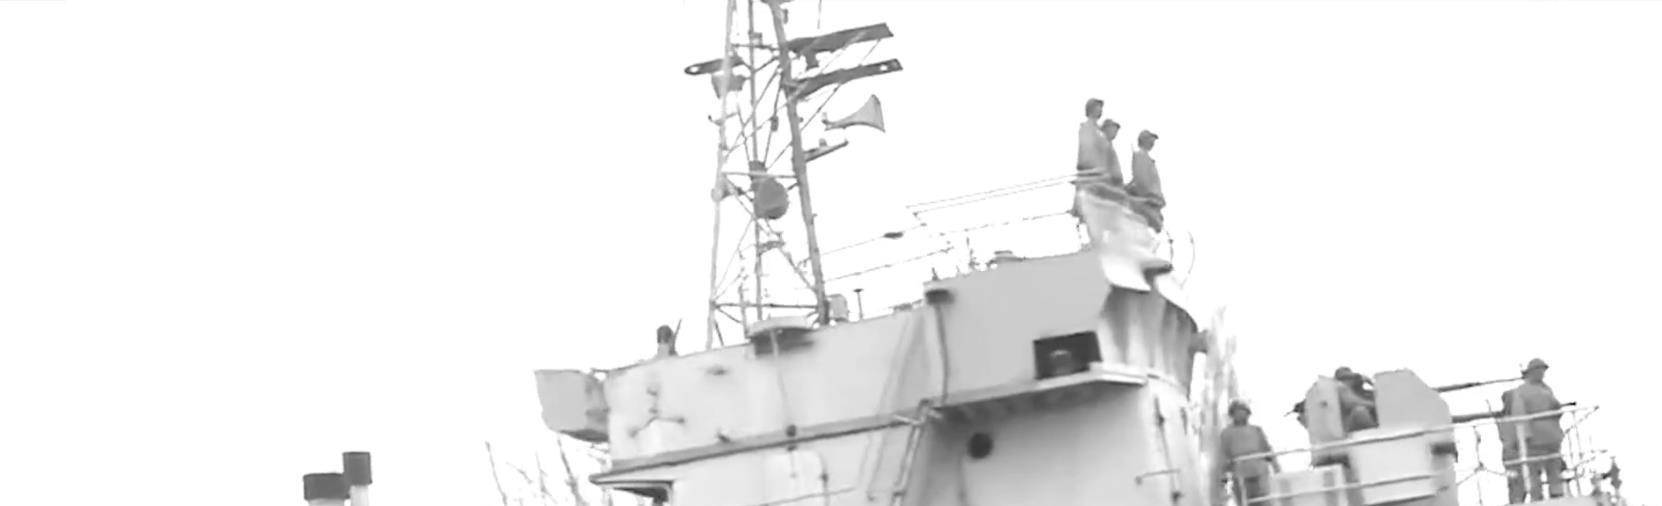 豫章级驱逐舰图片